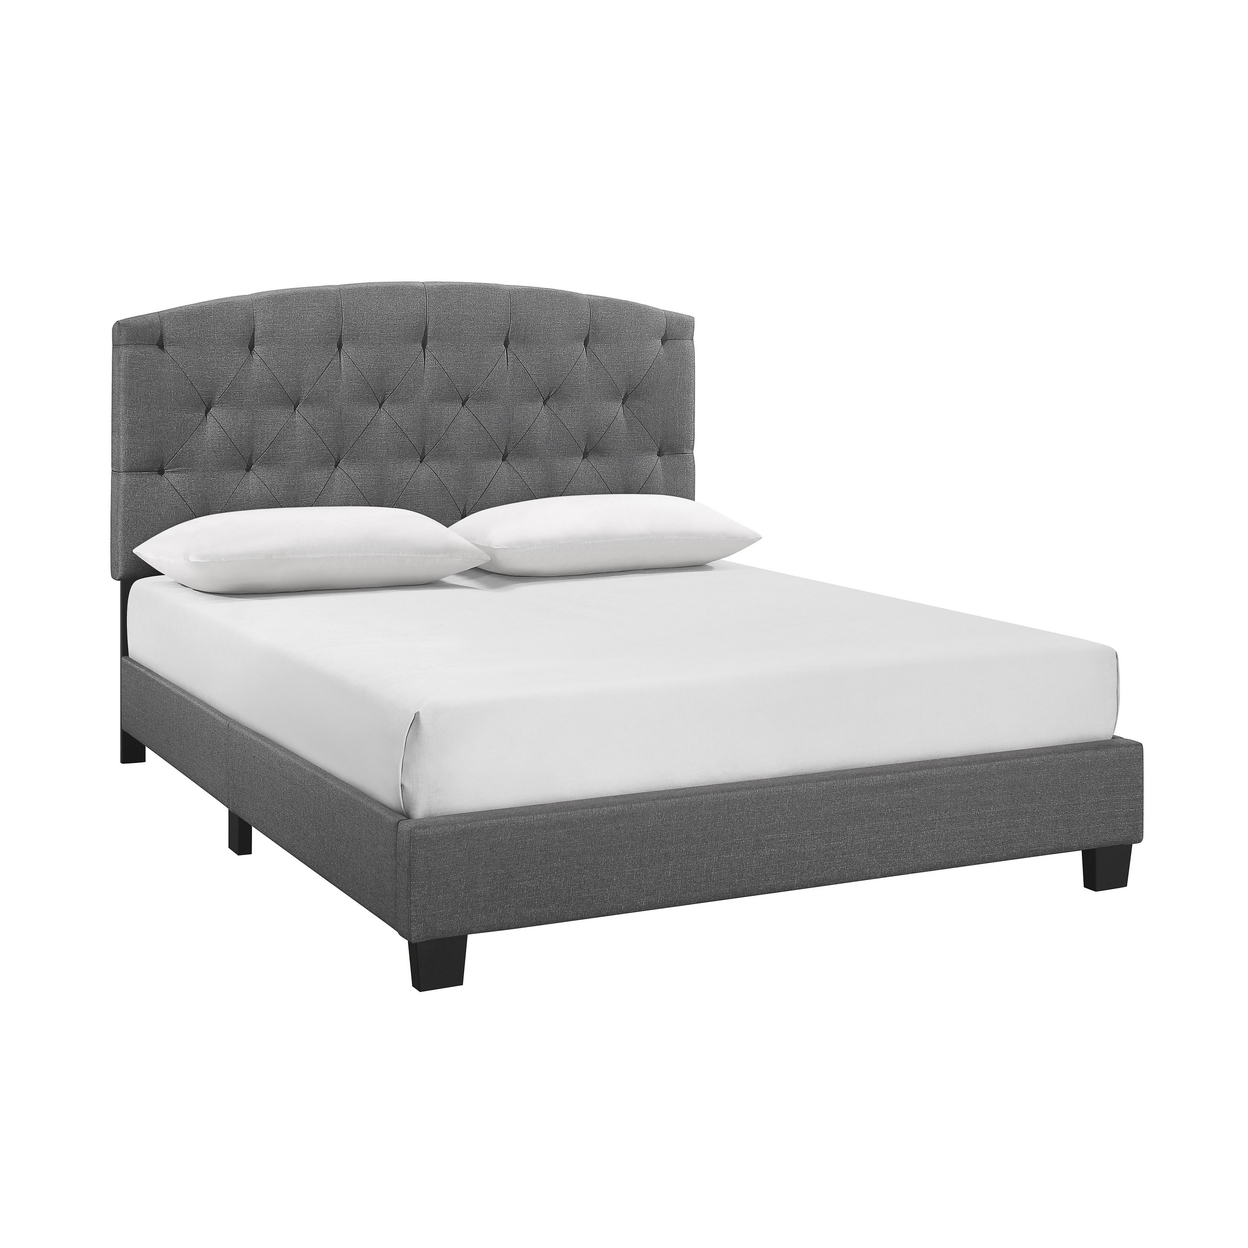 Dane Full Size Bed, Fully Upholstered, Tufted Curved Headboard, Light Gray- Saltoro Sherpi